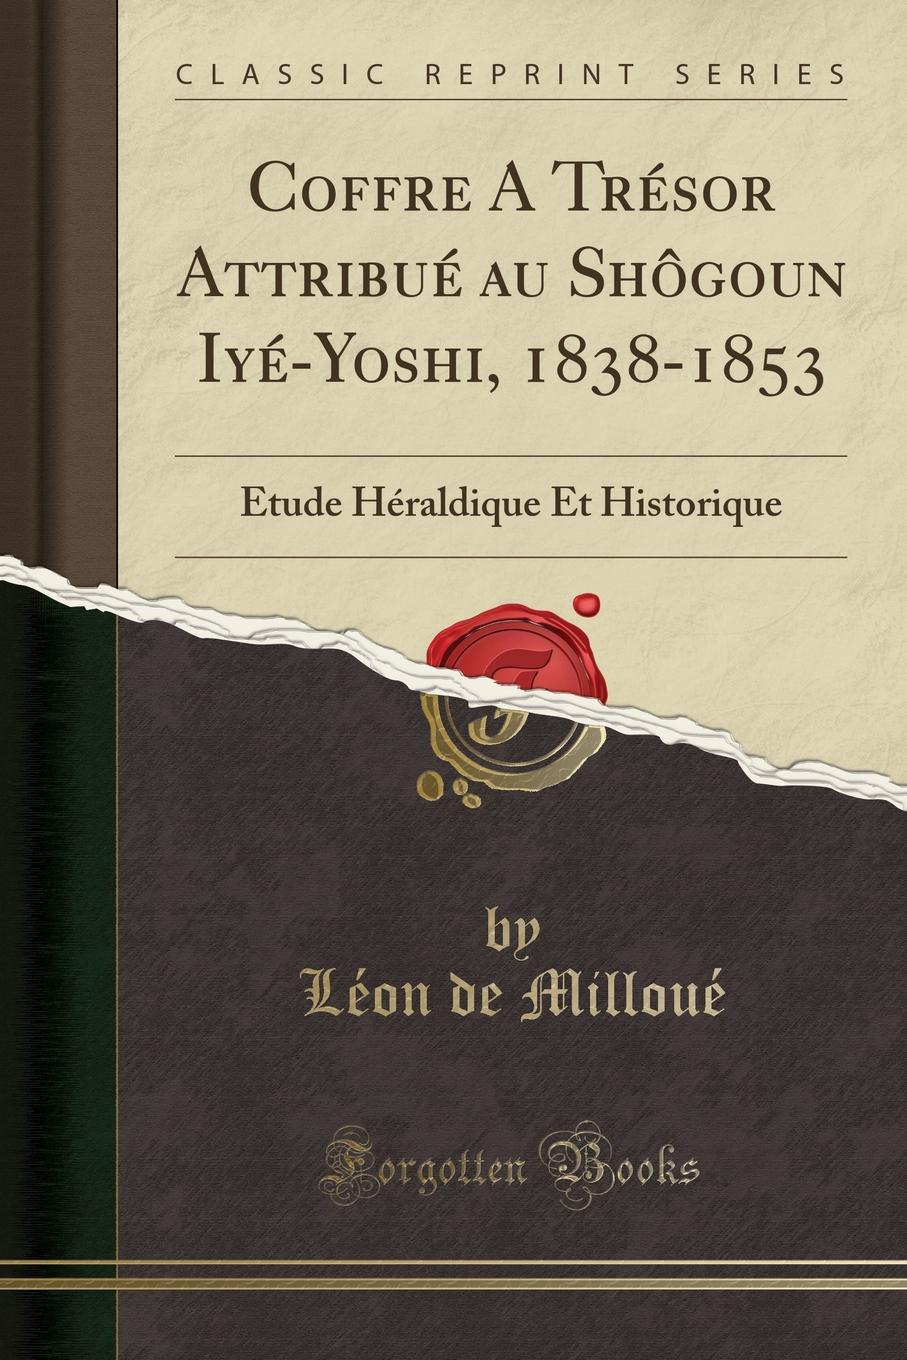 Léon de Milloué Coffre A Tresor Attribue au Shogoun Iye-Yoshi, 1838-1853. Etude Heraldique Et Historique (Classic Reprint)